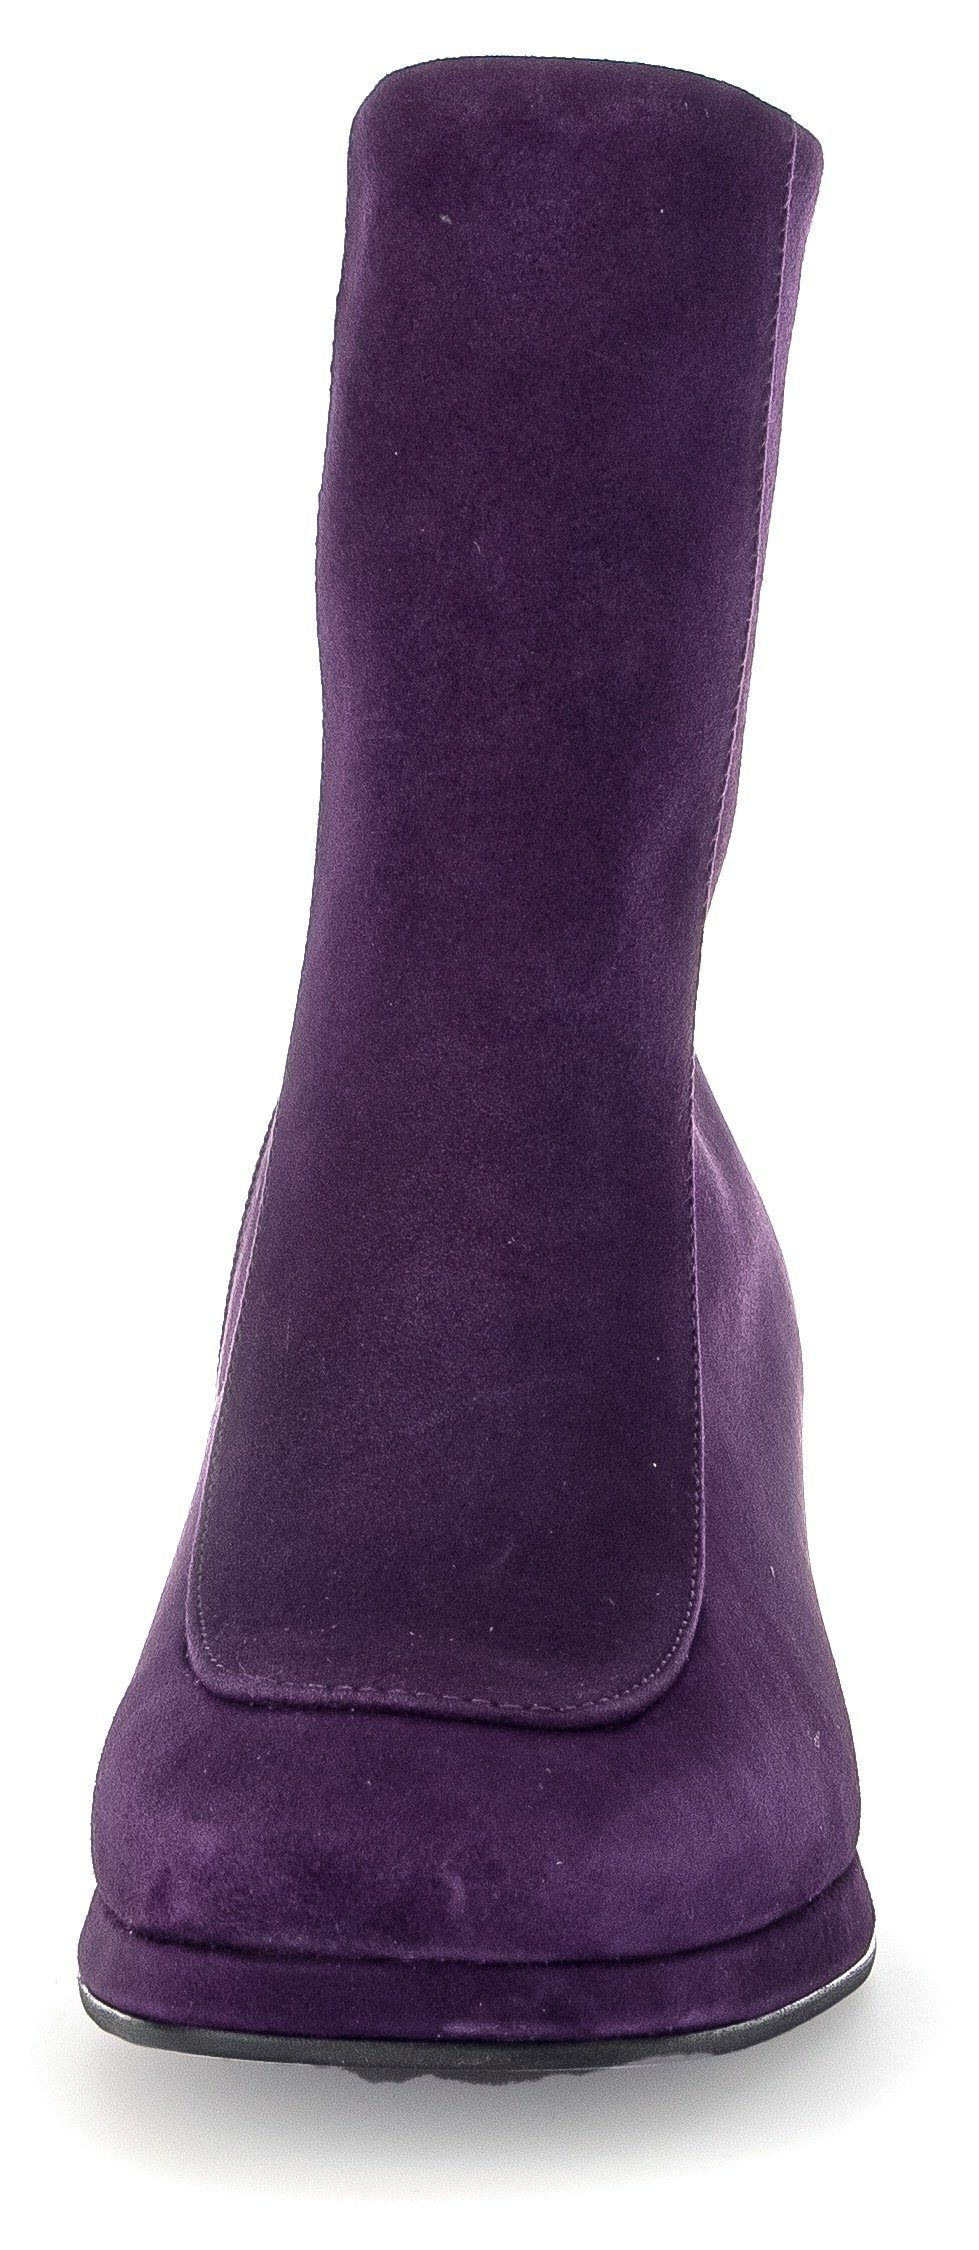 Gabor Milano Stiefelette in lila trendiger Karreeform, G Weite